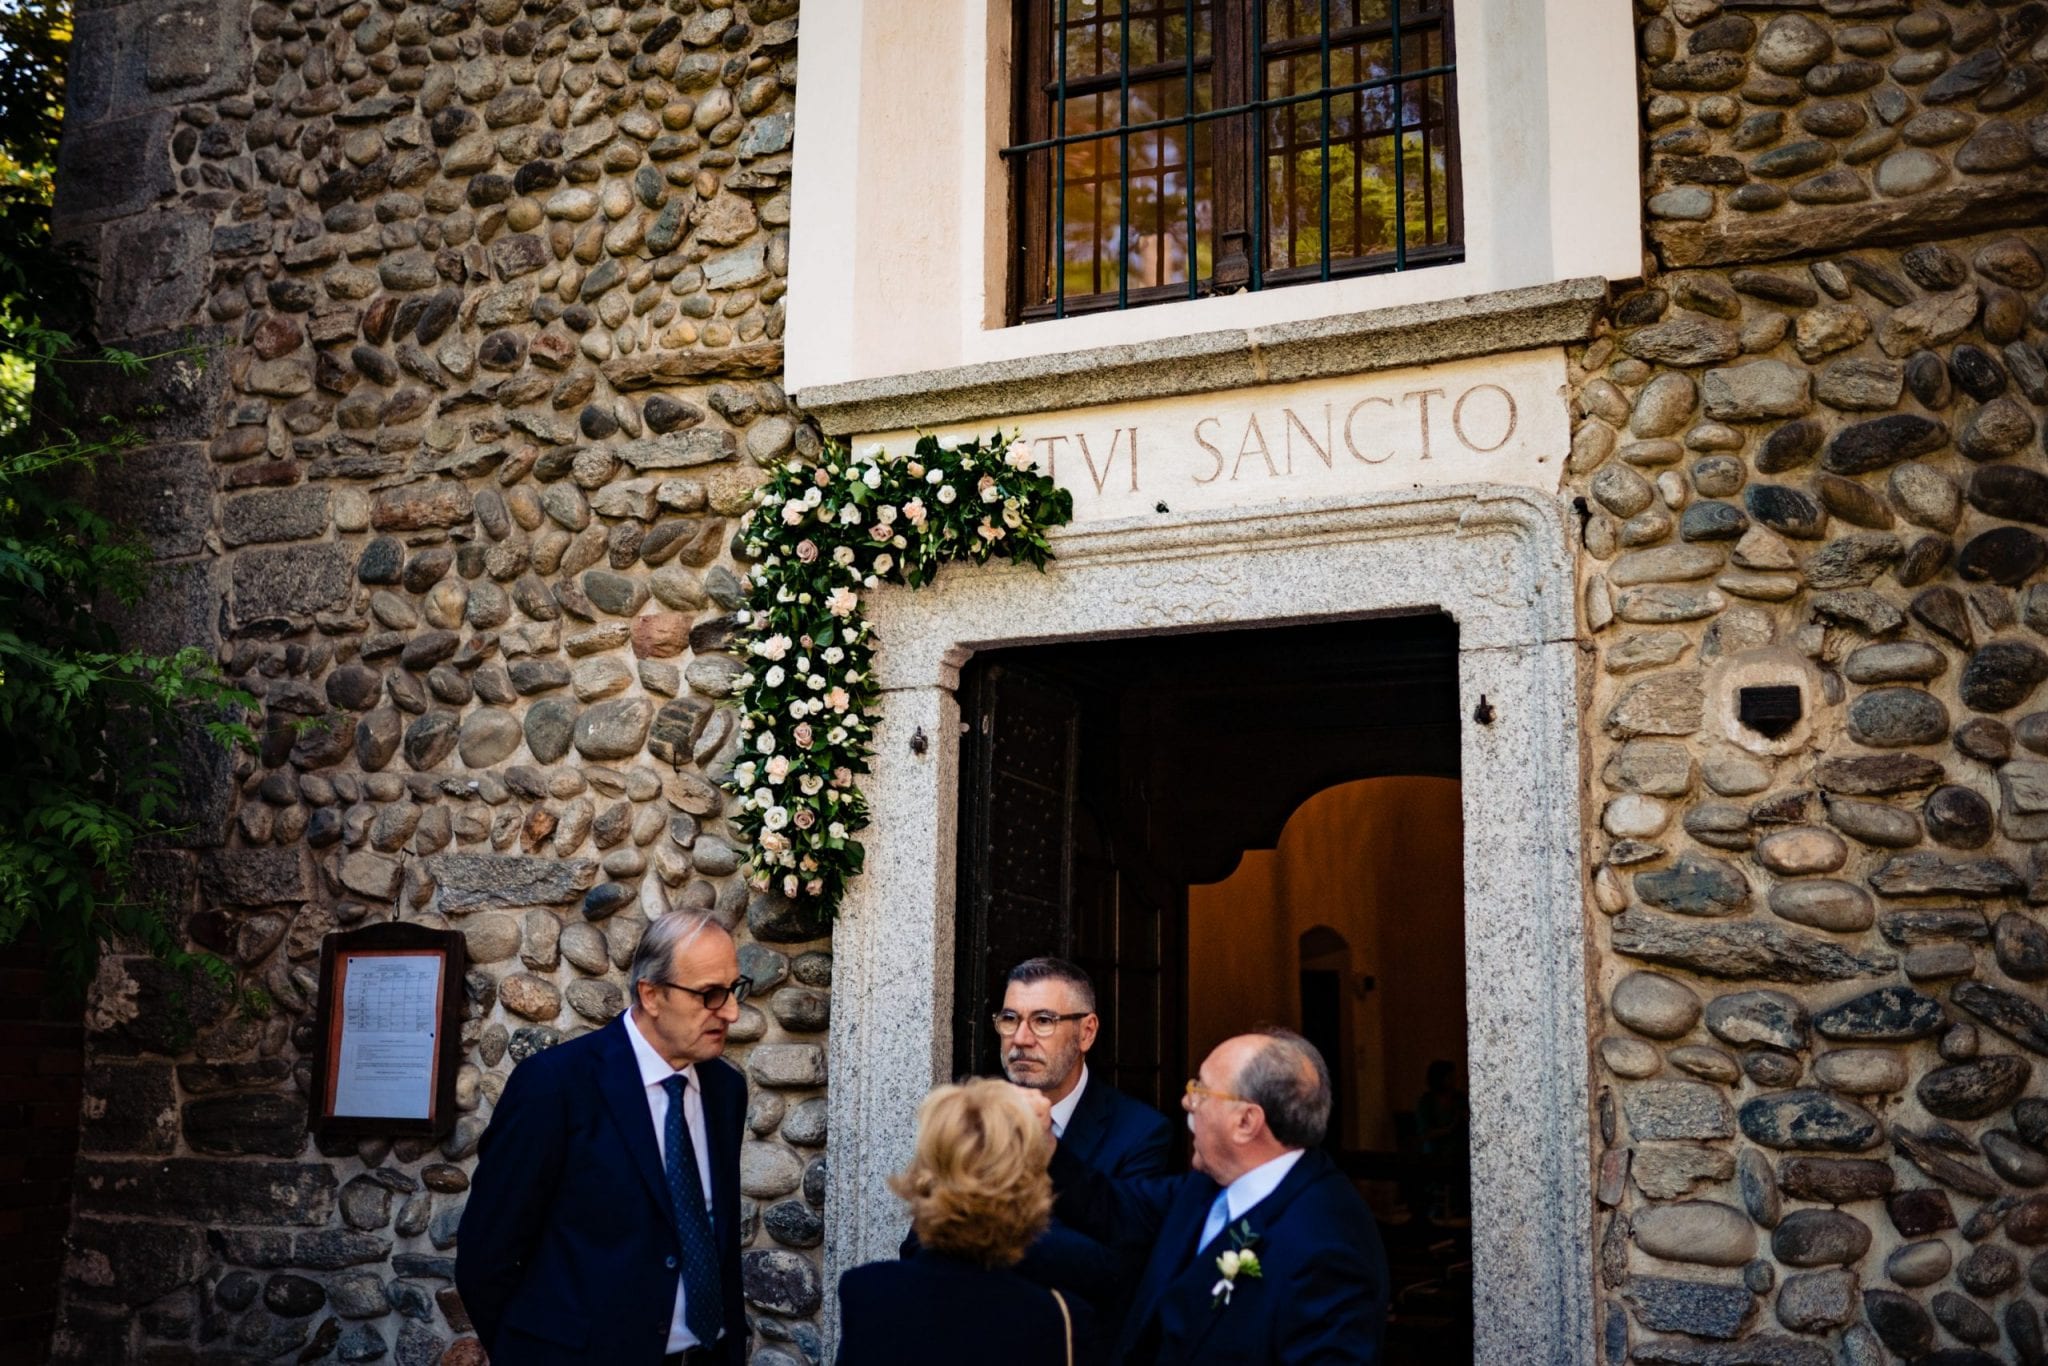 Fotografo Fotografia di Matrimonio Abbazia Santo Spirito Villa Giannone Cerimonia Nozze